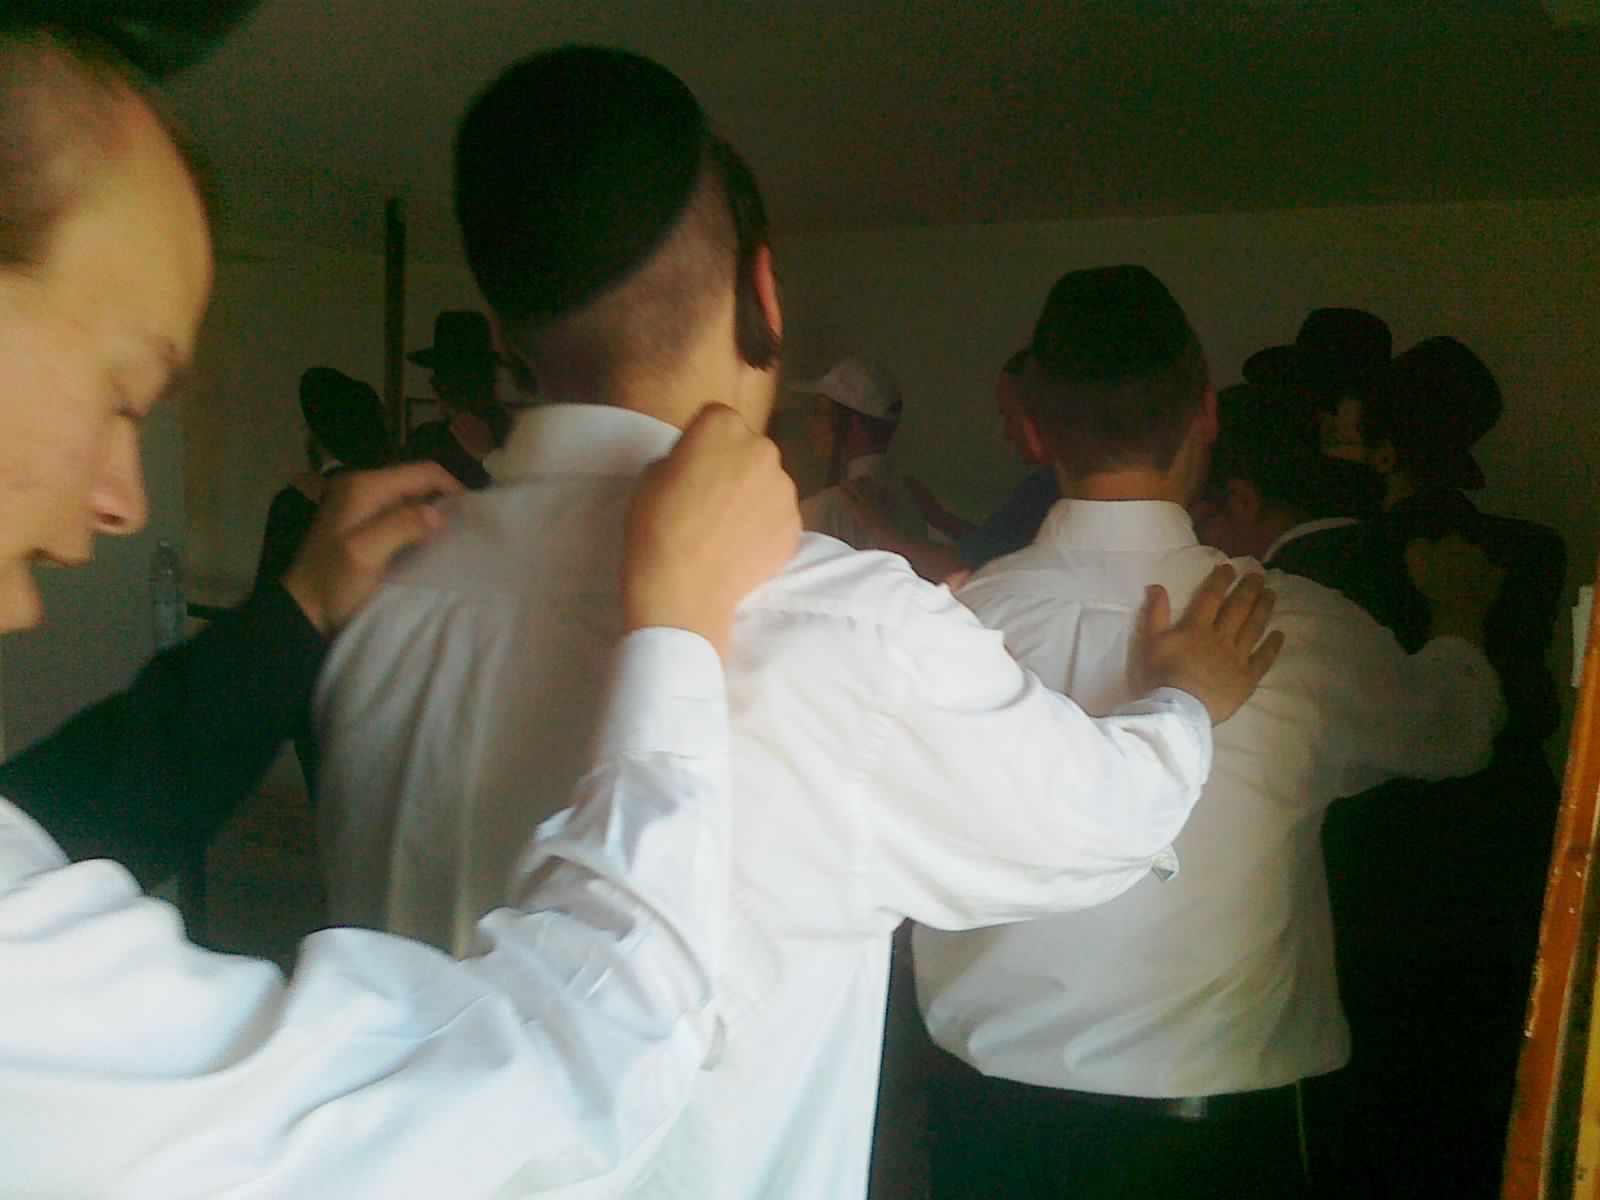 מתפללים בבית הכנסת שלום על ישראל ביריחו שבוע שעבר (יח"צ)